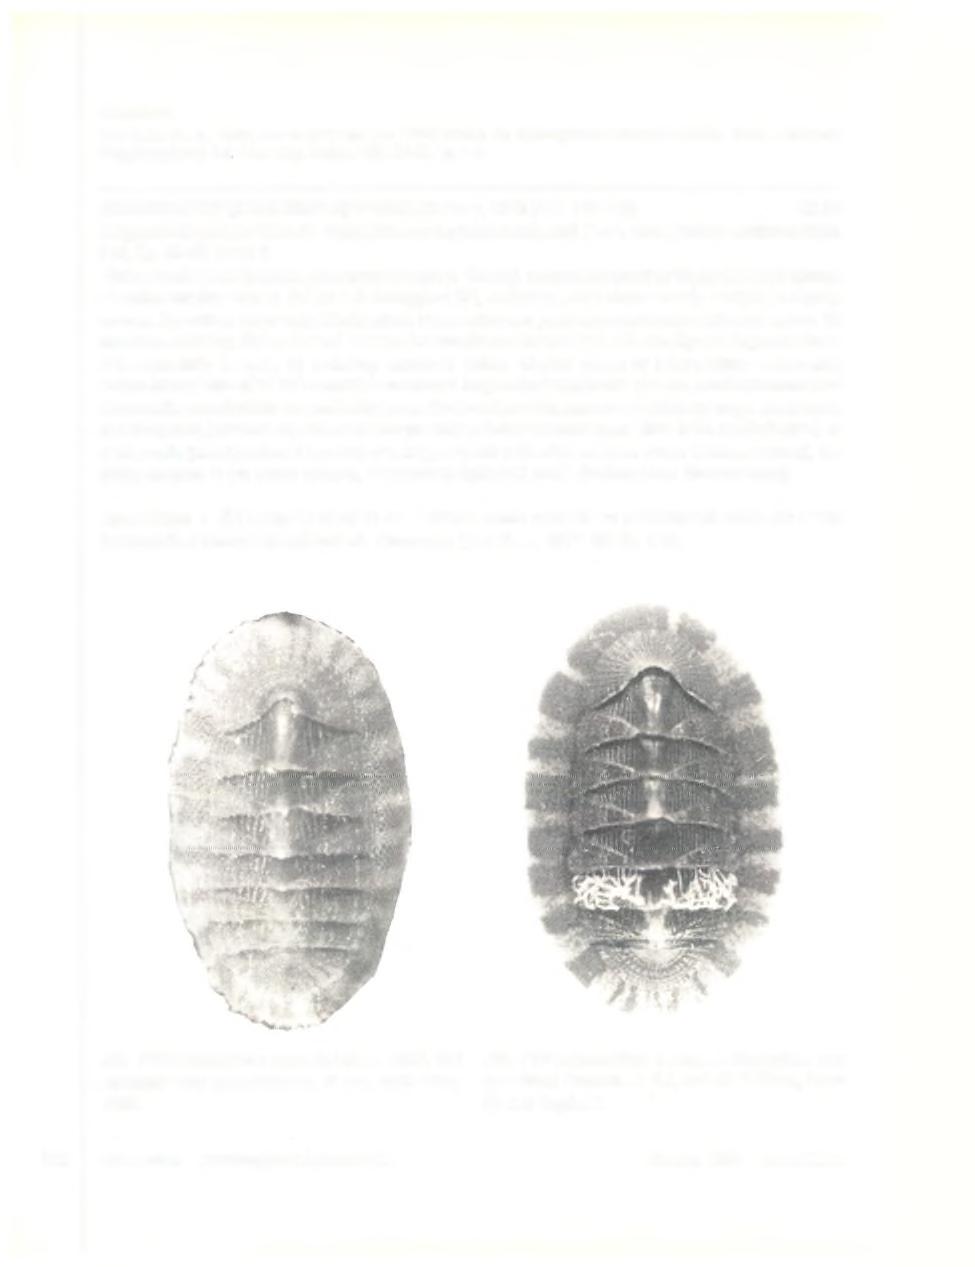 Literatuur: Van Belle, R. A., 1975, Sur la présence en Méditerranée de L e p id o p le u ru s a lv e o lu s (Lovén, 1846) (Mollusca: Polyplacophora), Inf. Soc. belg. Malac. 4(3): 57-58, fig. 1-4.